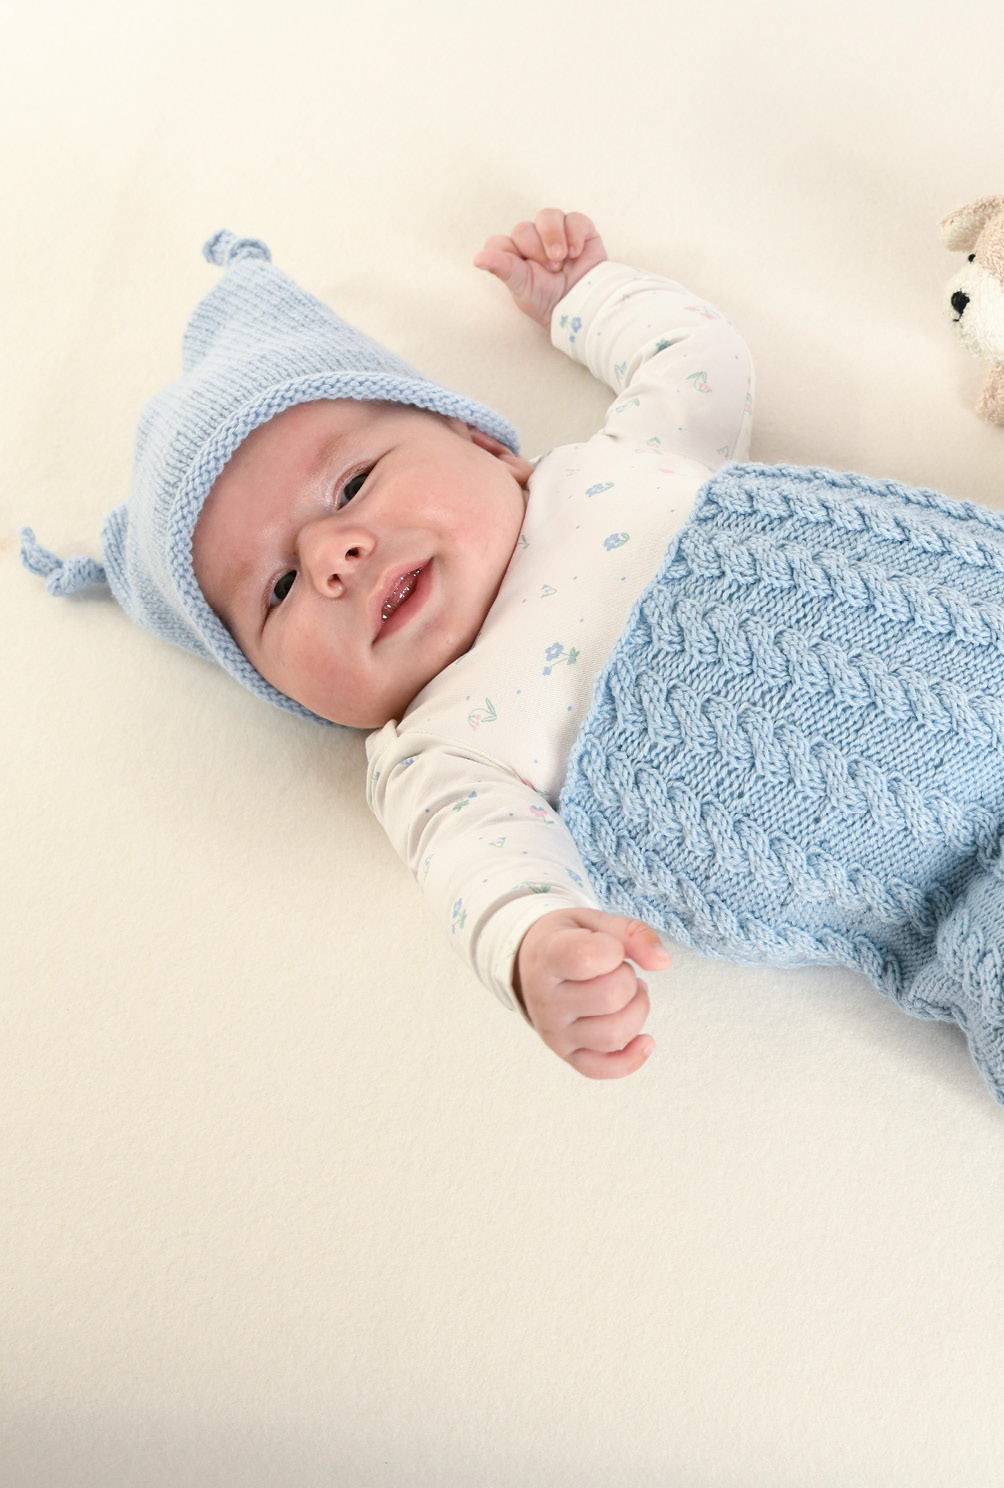 Anleitung: Strick-Set aus Pucksack, Mütze und Schuhen in Hellblau und Rosa  fürs Baby